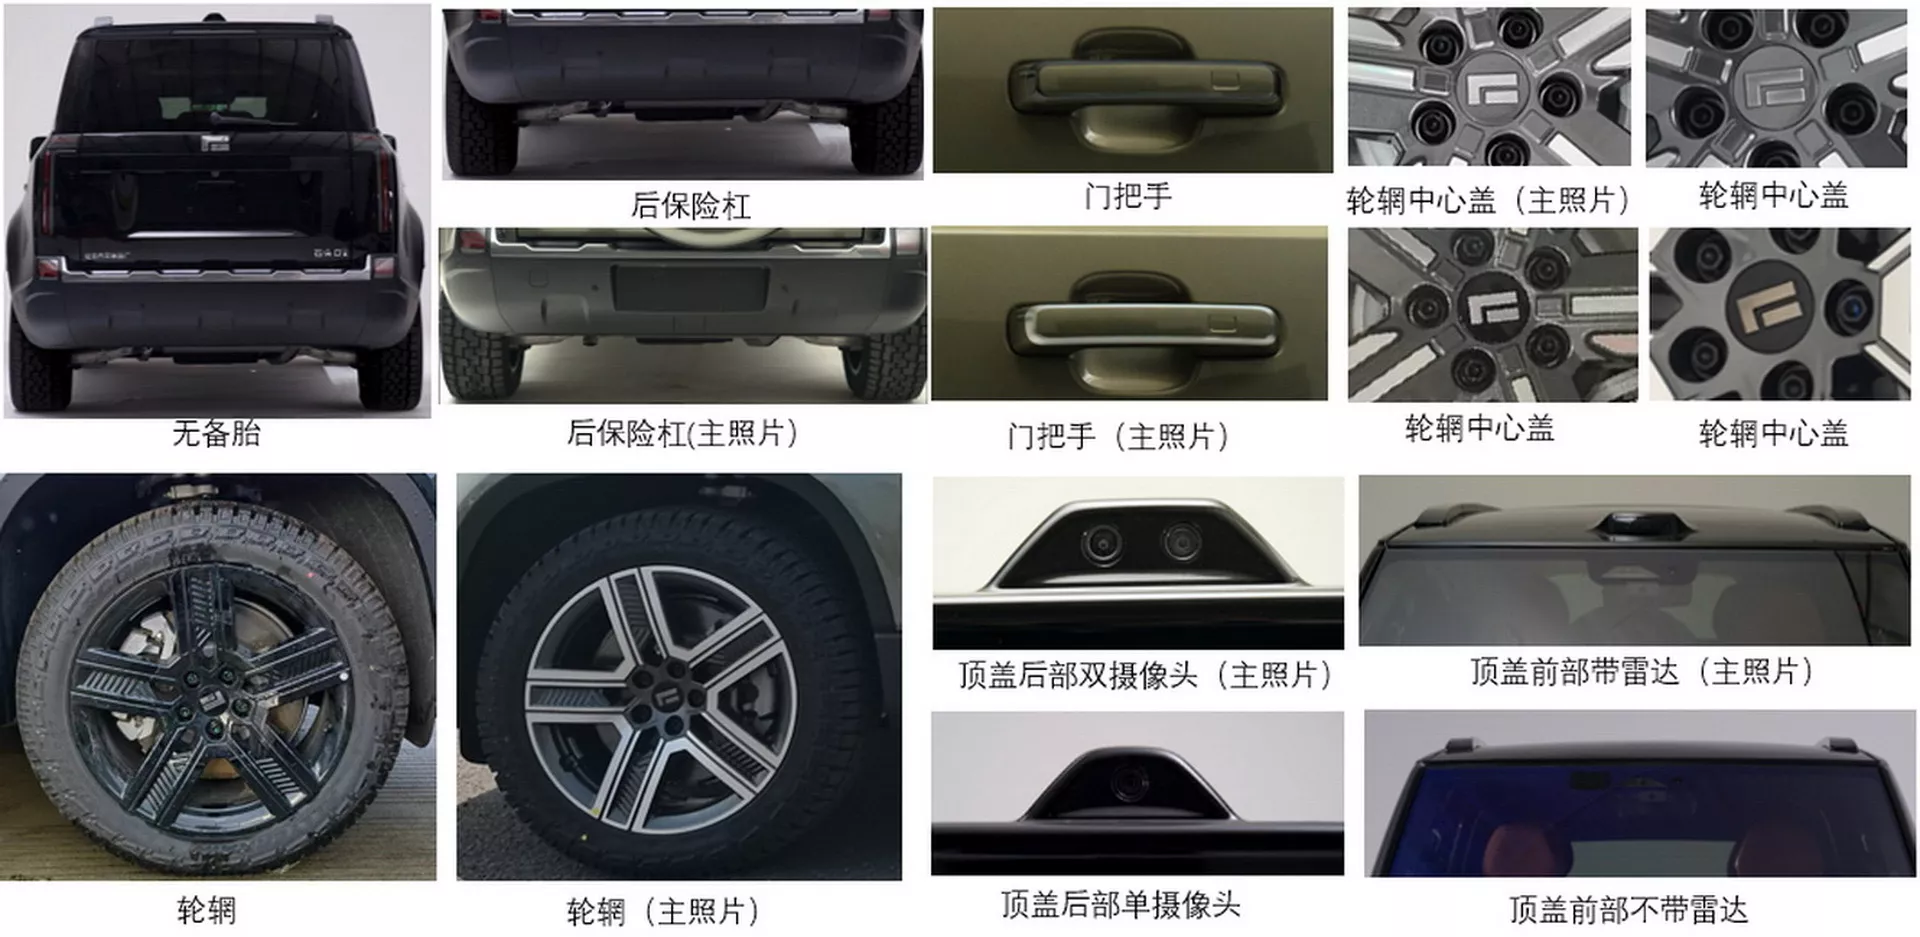 بايك الصينية تكشف عن SUV وعرة جديدة كلياً بتصميم مستوحى من ديفندر 3